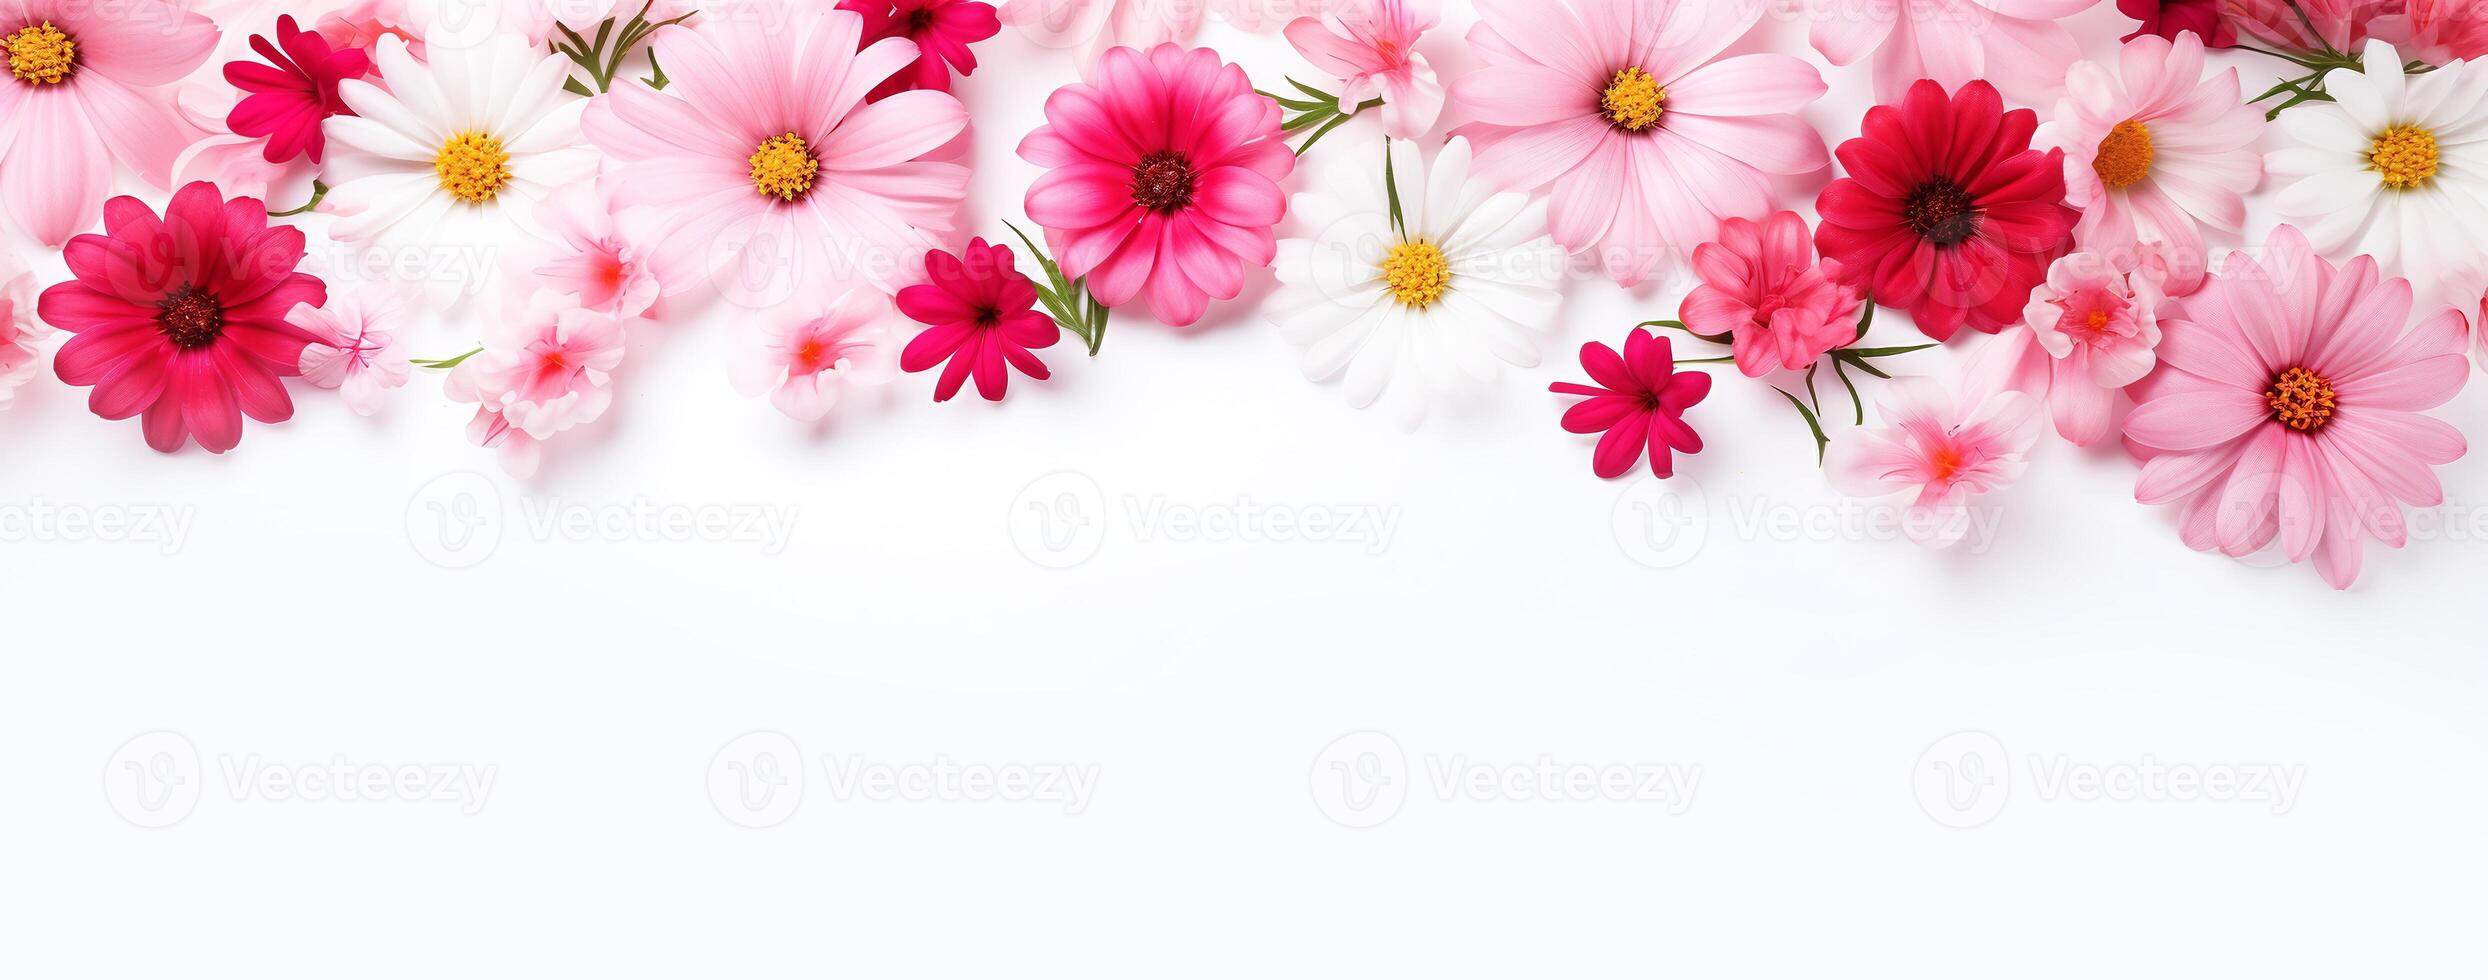 ai gerado vibrante Rosa e vermelho floral bandeira, perfeito para Primavera desenhos, Casamento convites, e rede cabeçalhos em uma branco pano de fundo. foto